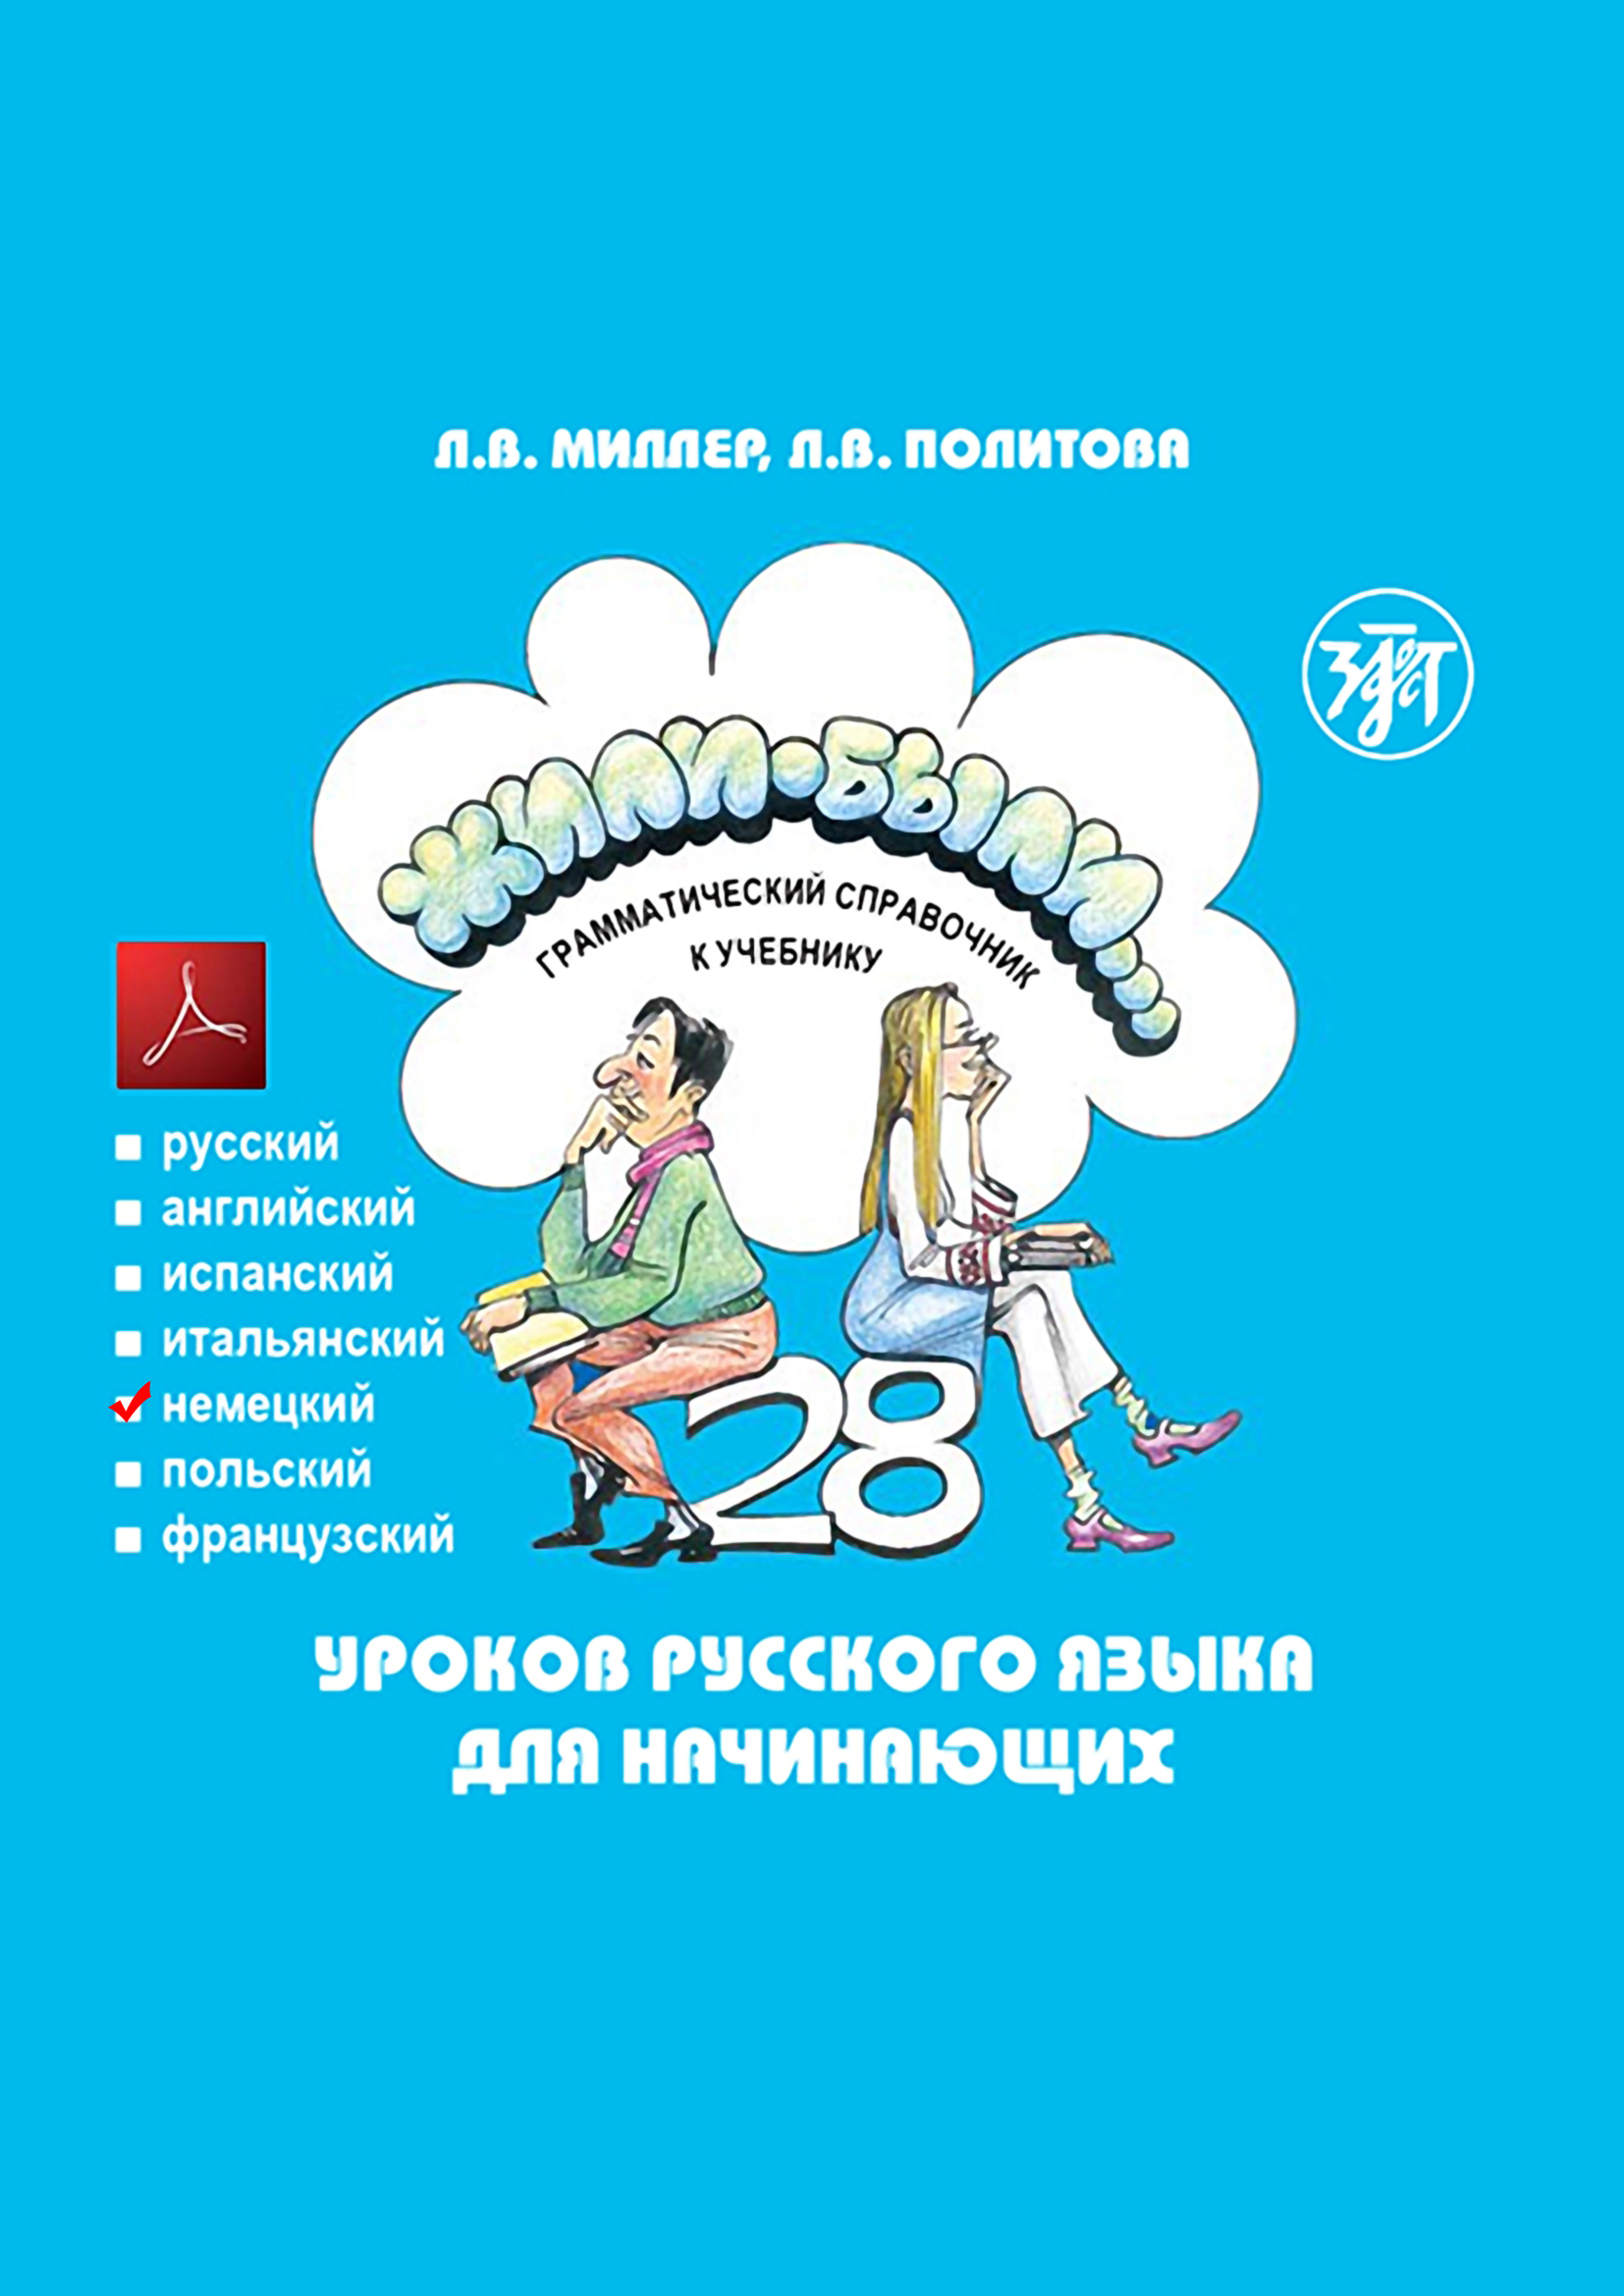 Жили-были… 28 уроков русского языка для начинающих. Грамматический справочник к учебнику. Немецкая версия